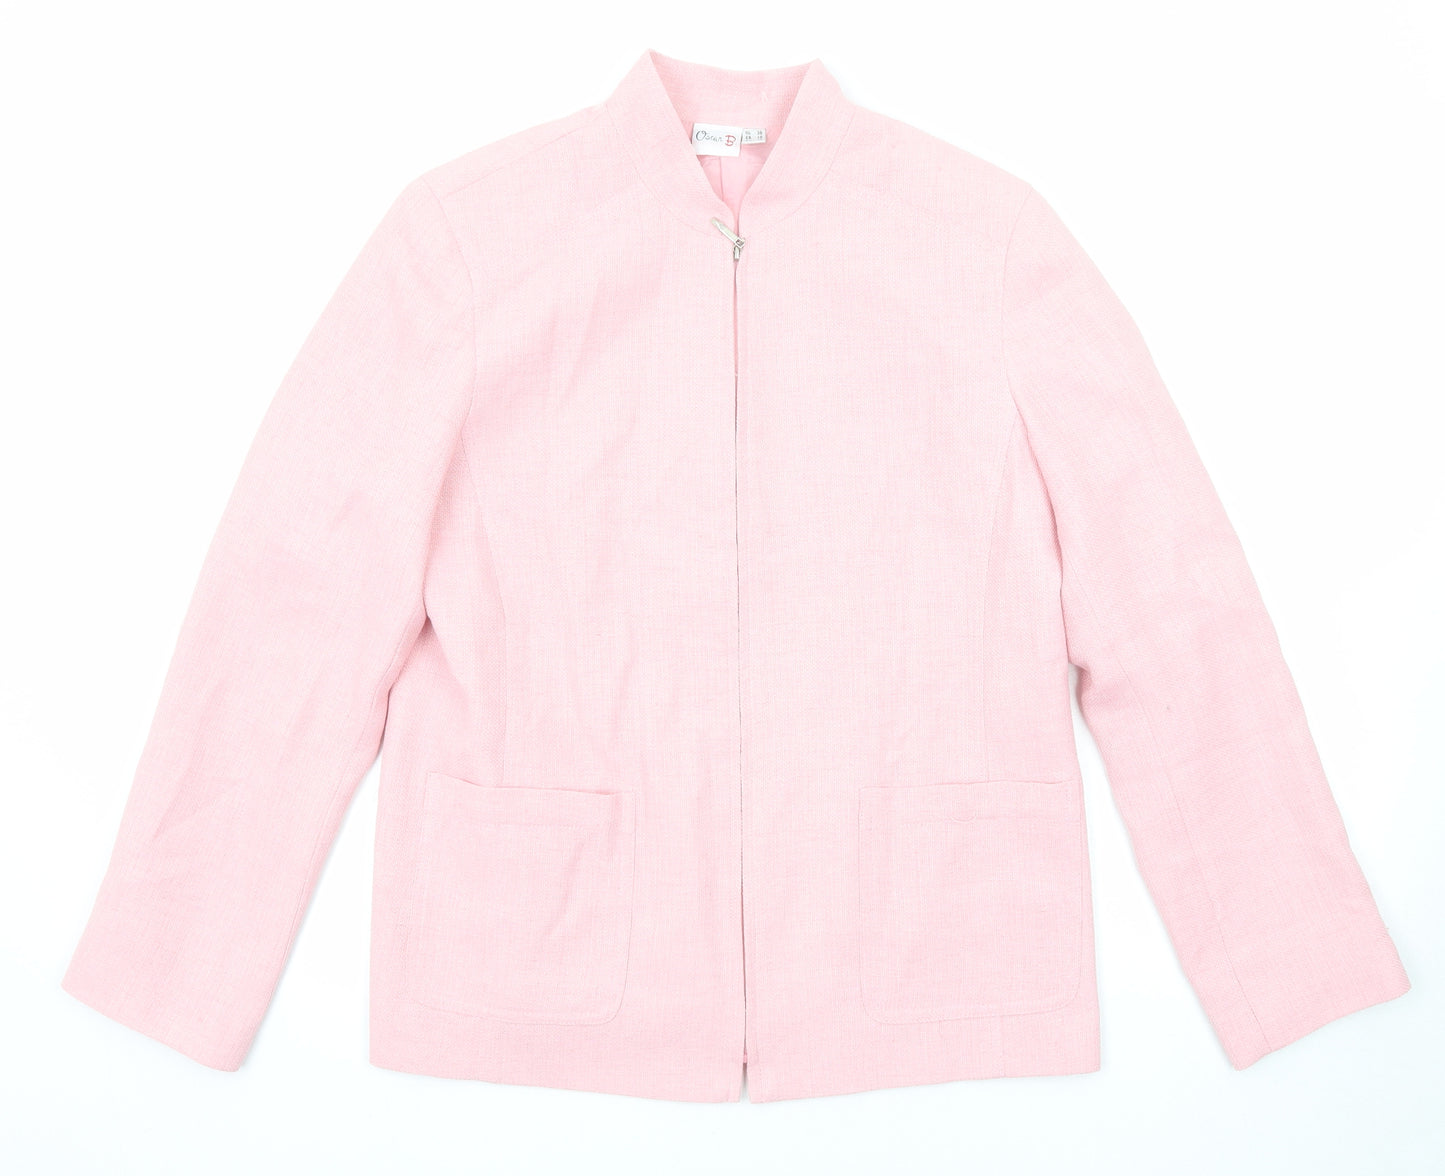 Oscar B Womens Pink Jacket Blazer Size 12 Zip